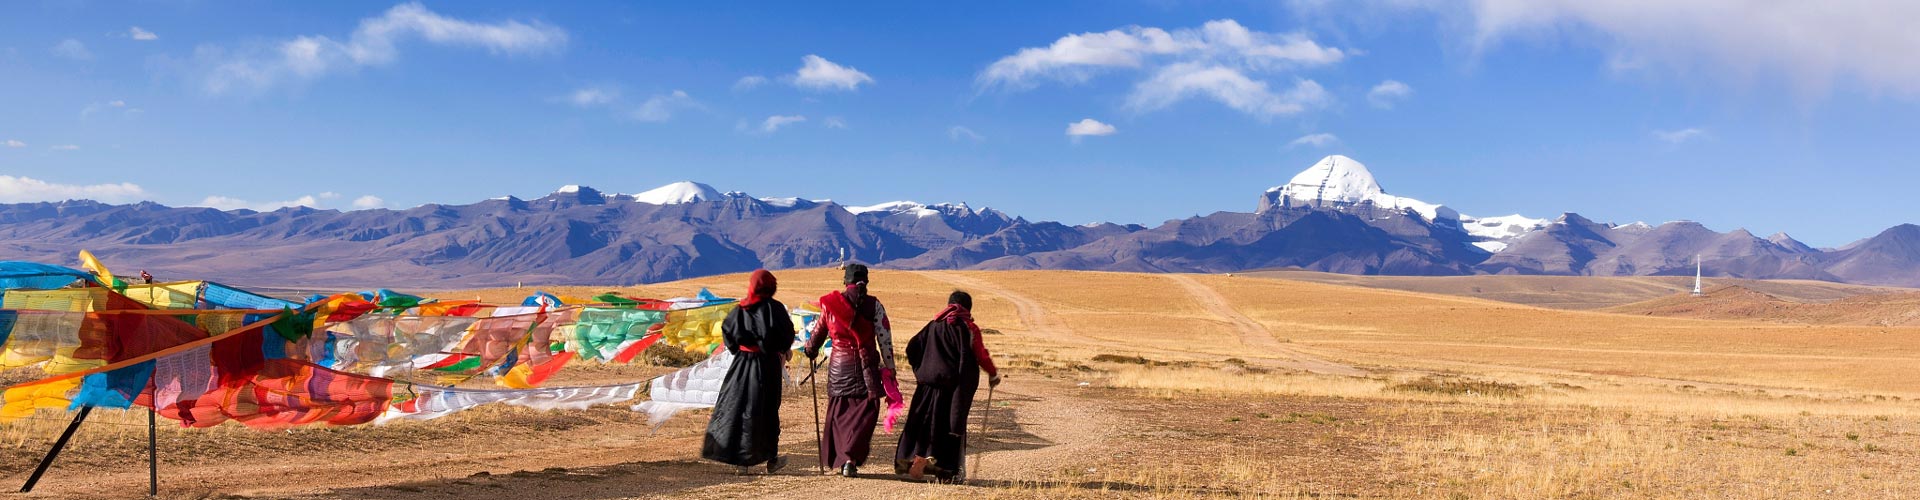 Tibet Trekking Tours